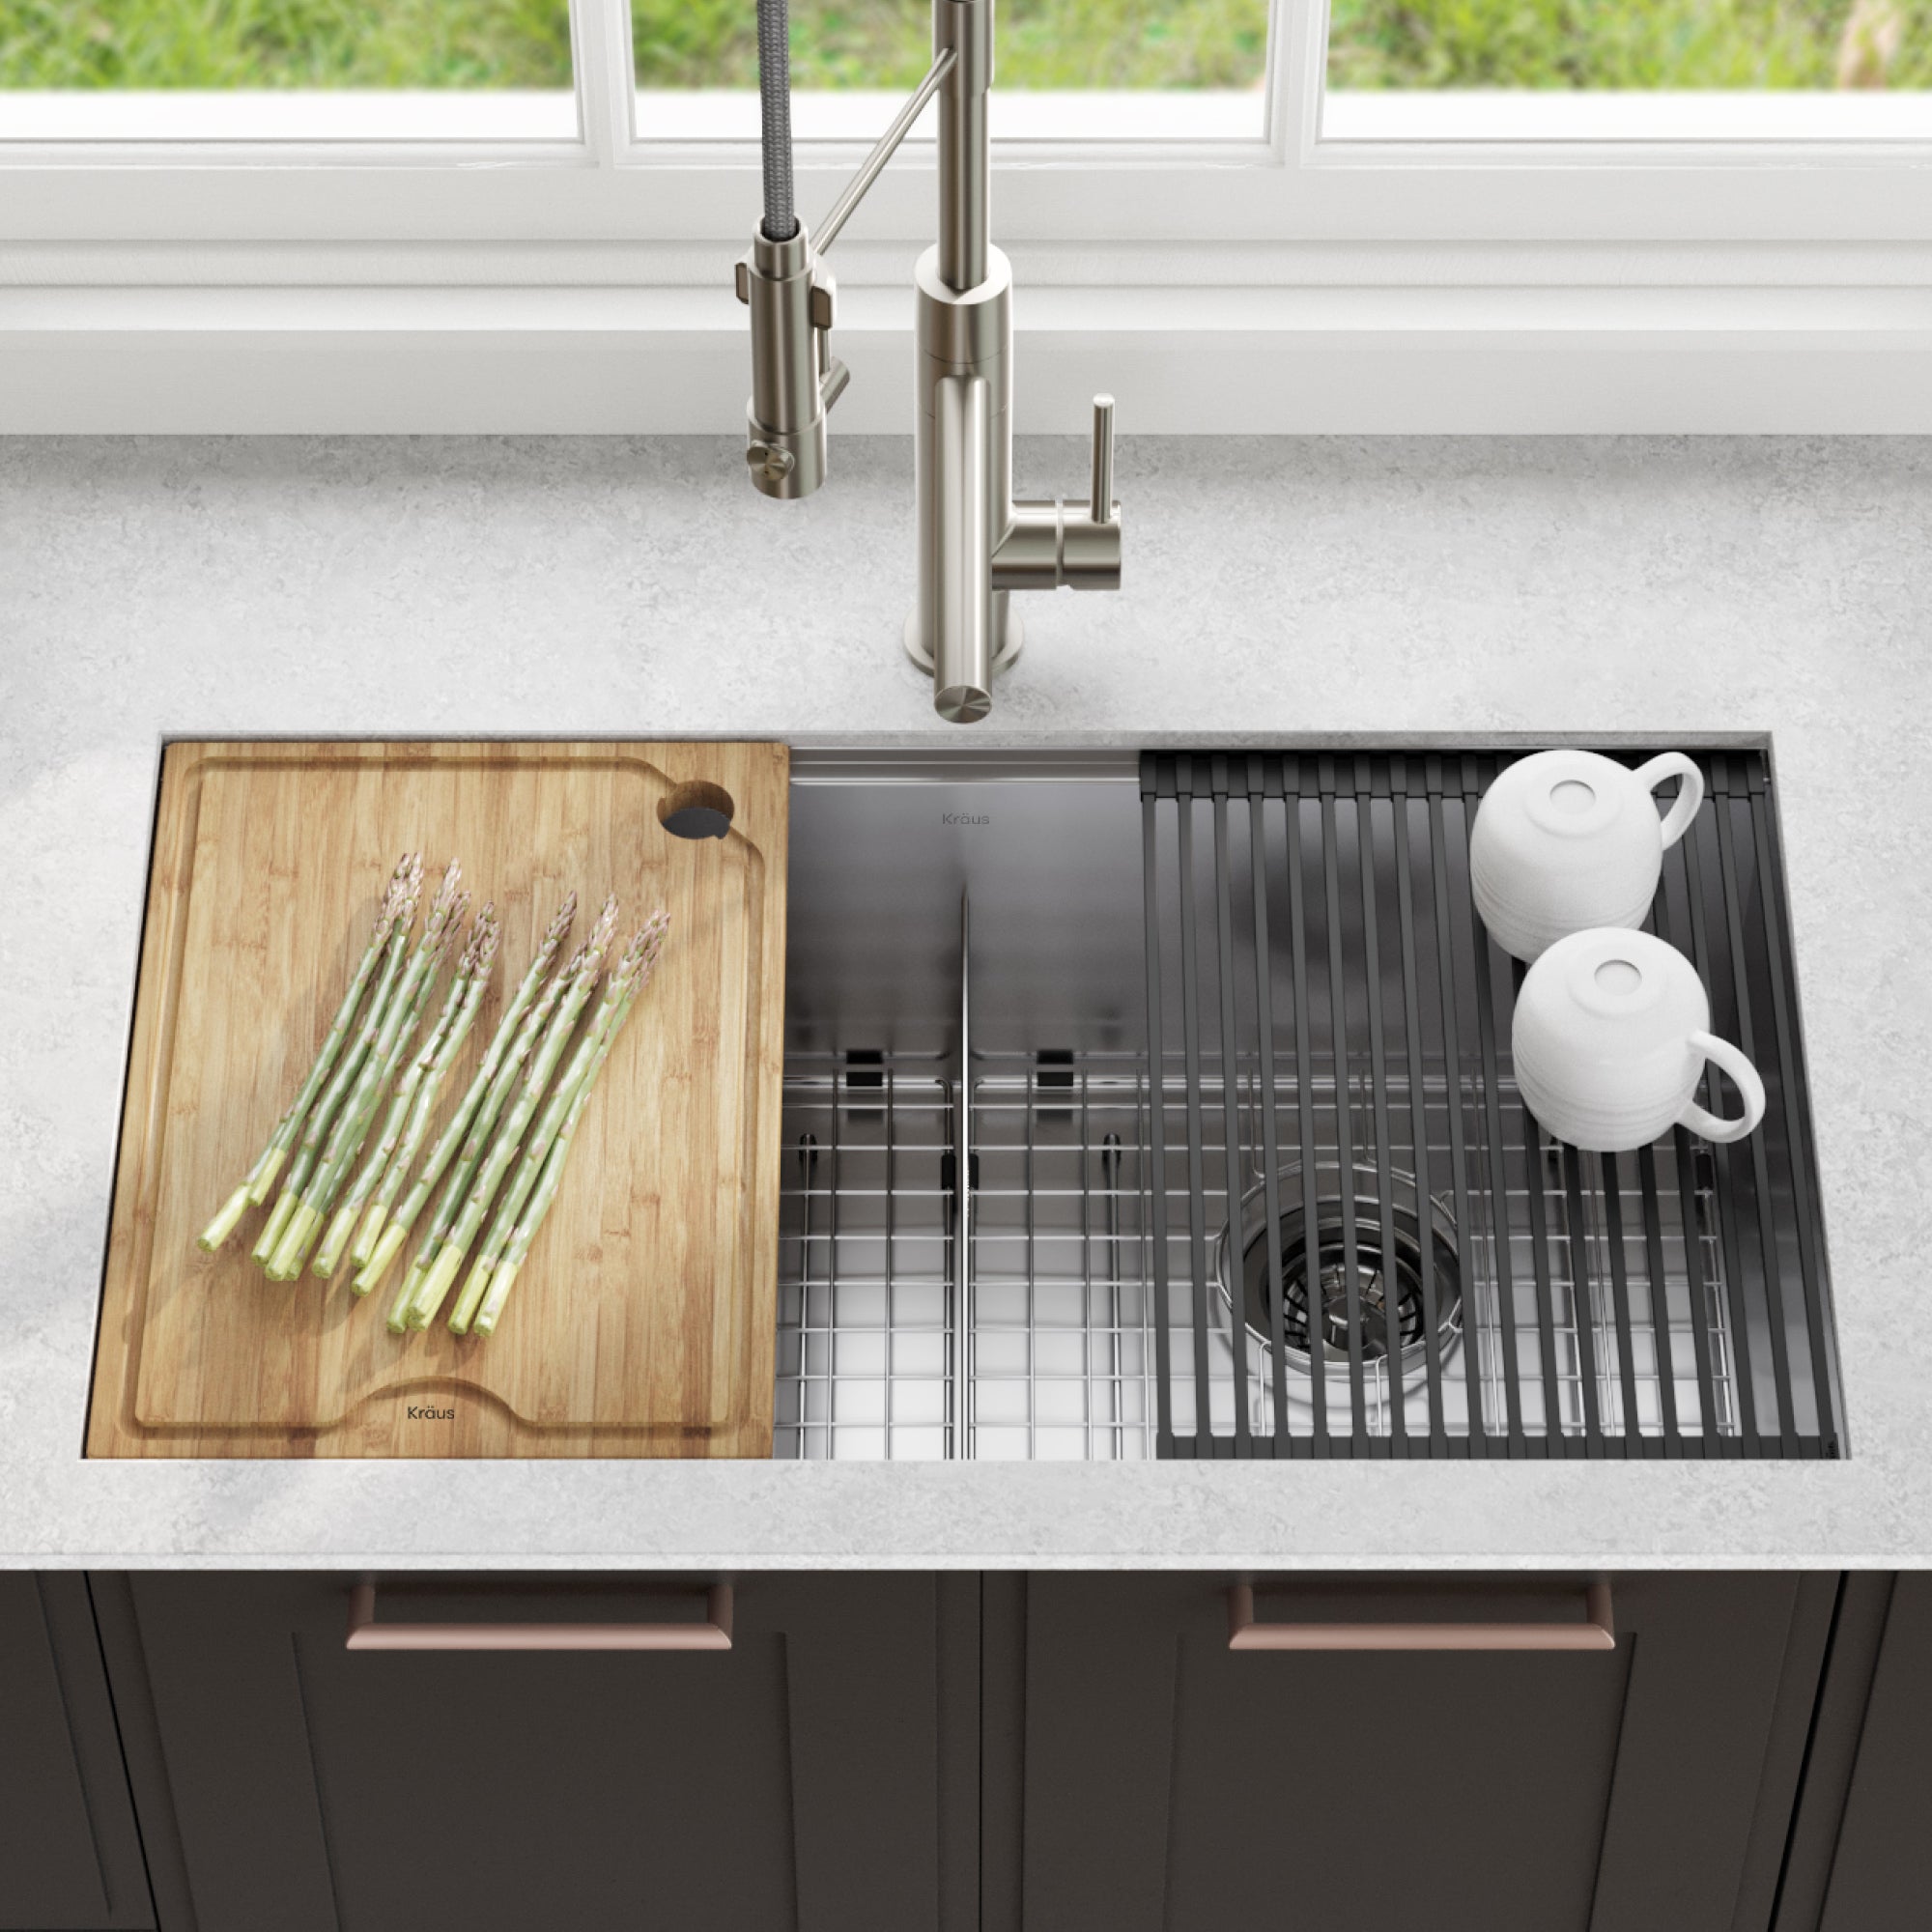 KRAUS Kore Workstation 33" Undermount 16 Gauge Double Bowl Stainless Steel Kitchen Sink with Accessories-Kitchen Sinks-DirectSinks